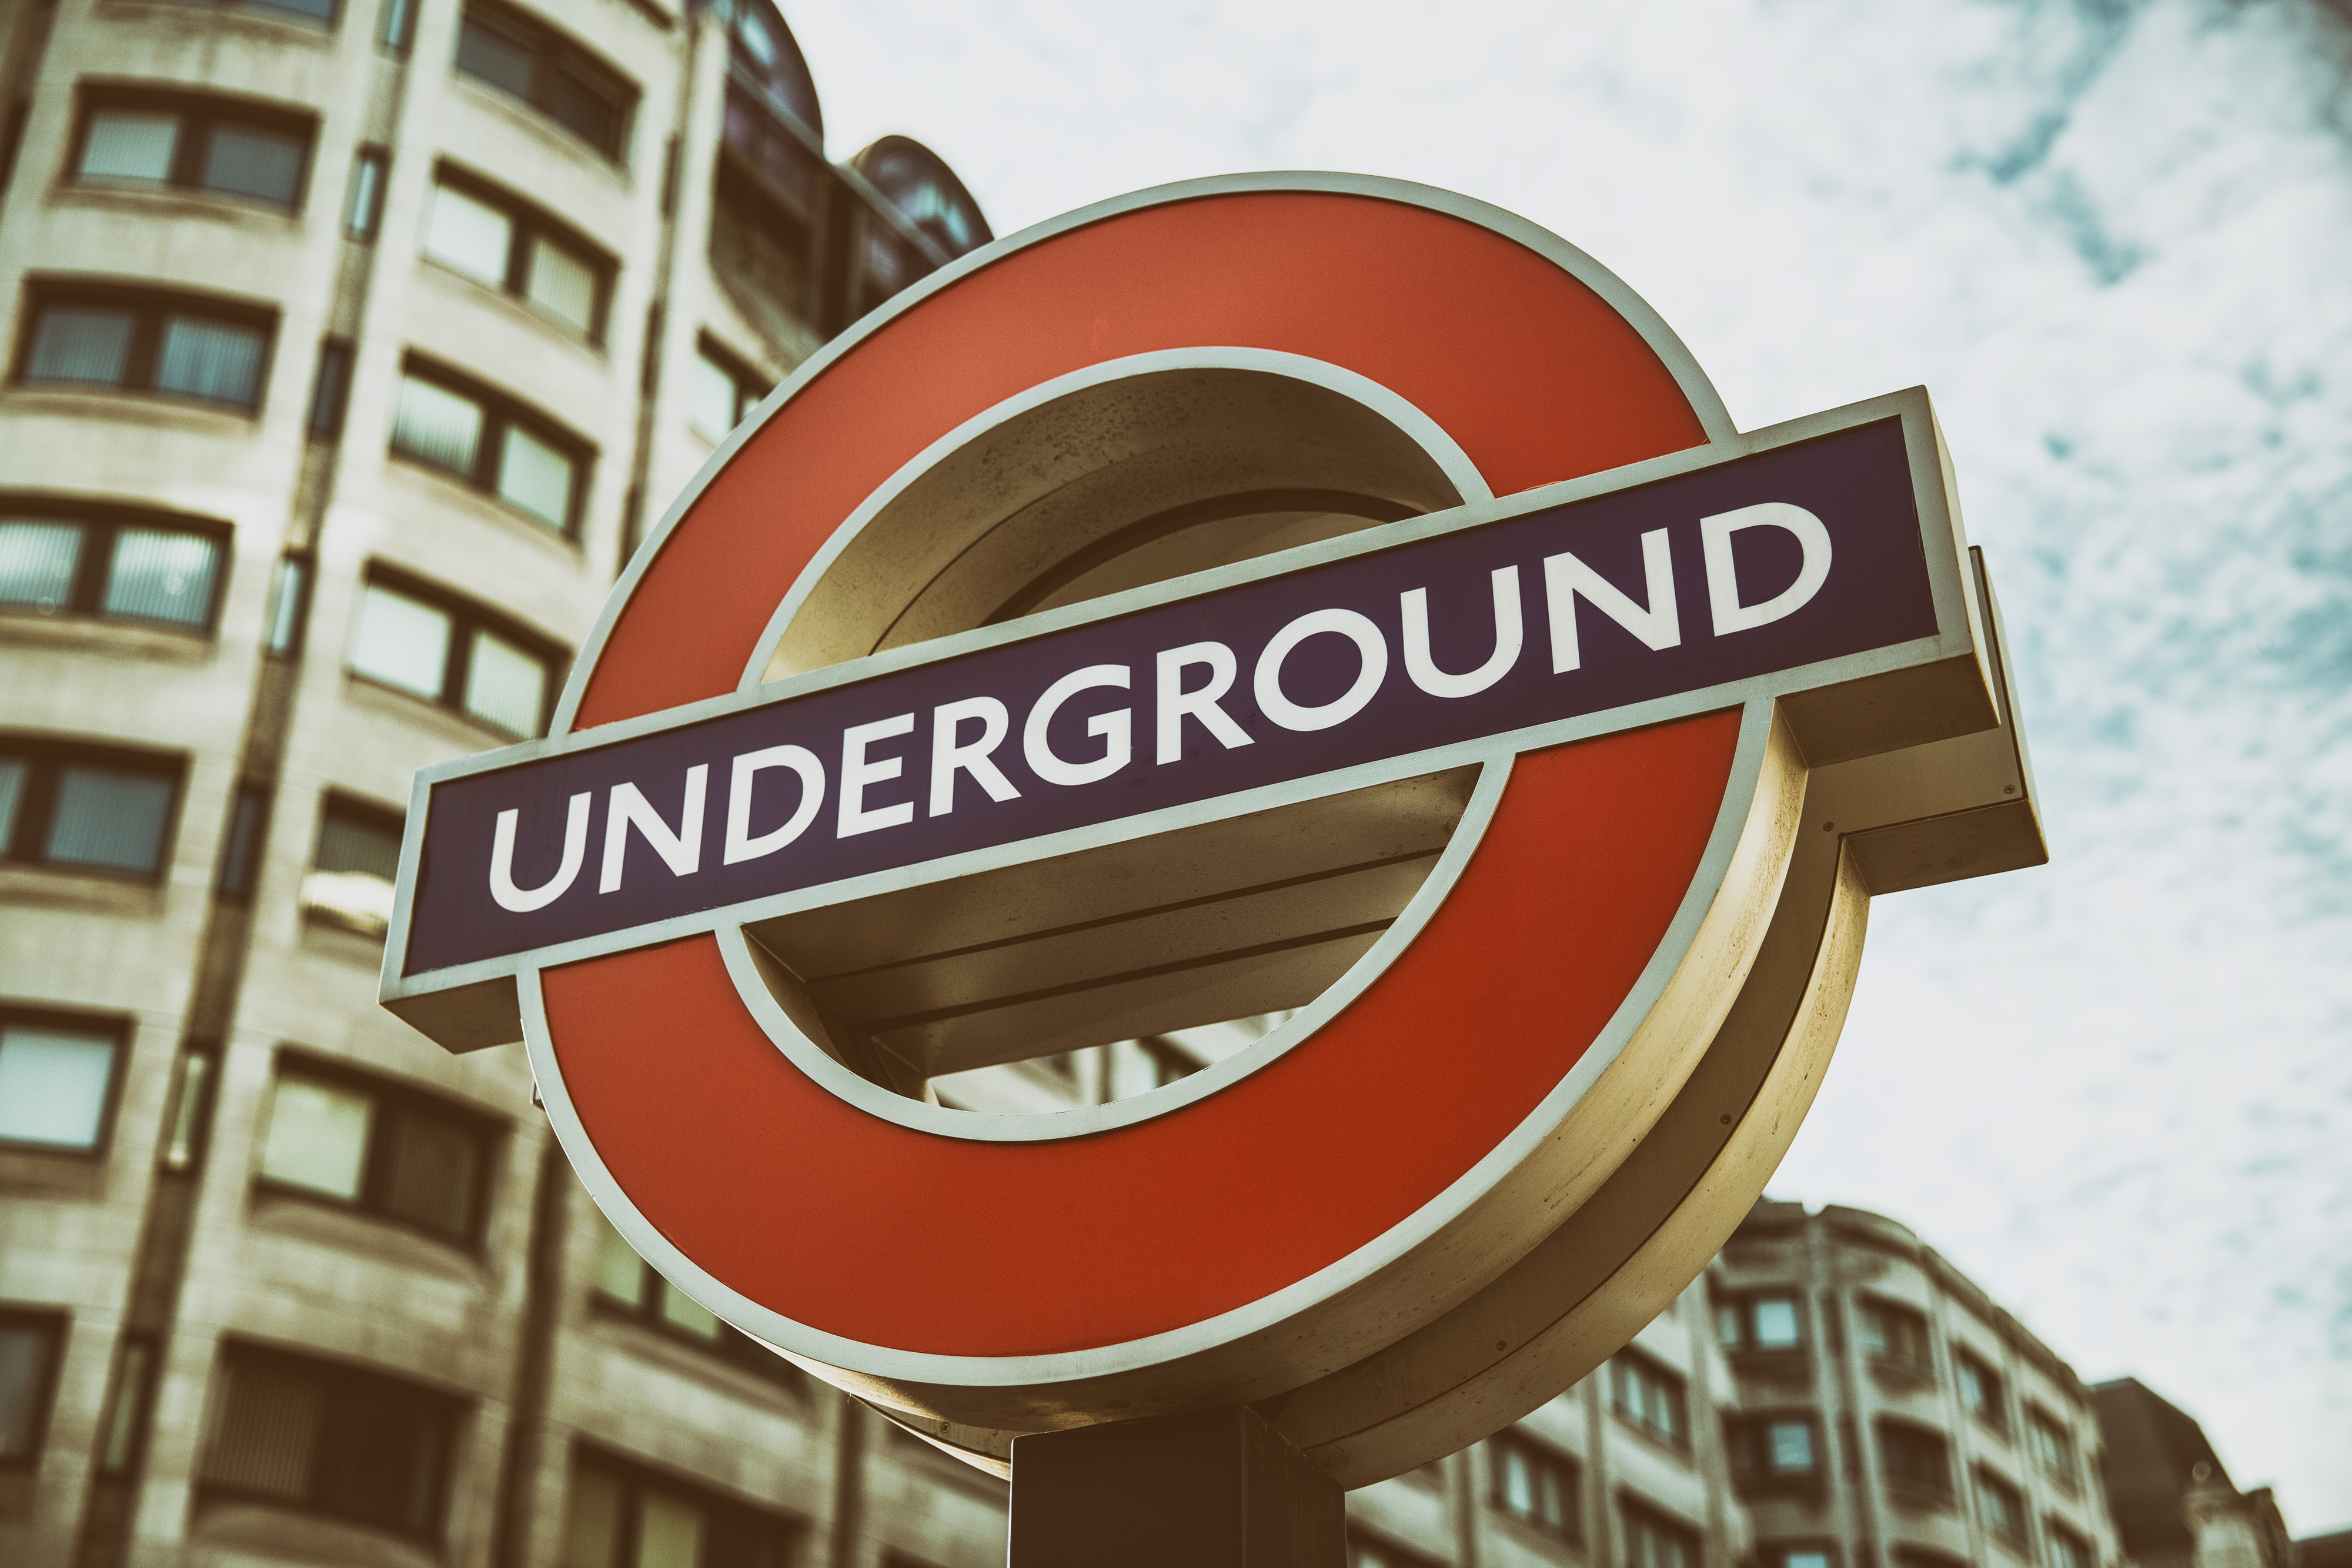 Андеграунд это простыми. Андеграунд. Underground значок. Значок лондонского метро. Ангарвунд.